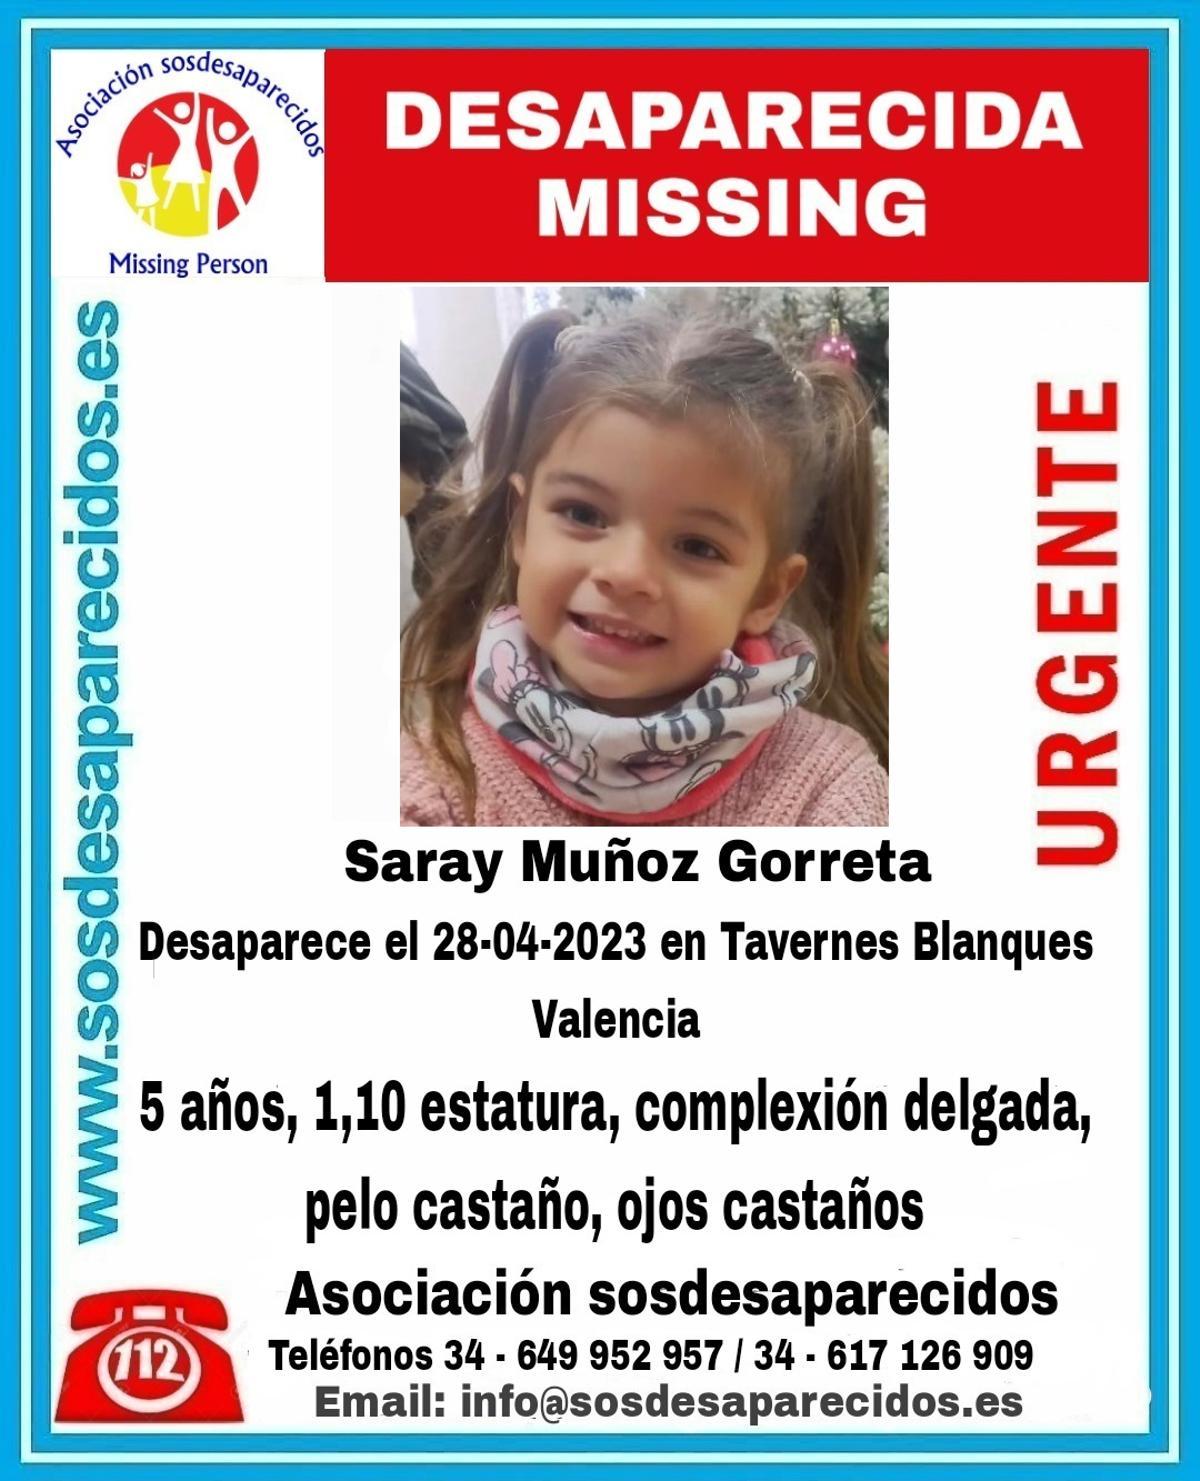 Cartel de la Asociación de Desaparecidos con la imagen y la descripción de Saray.